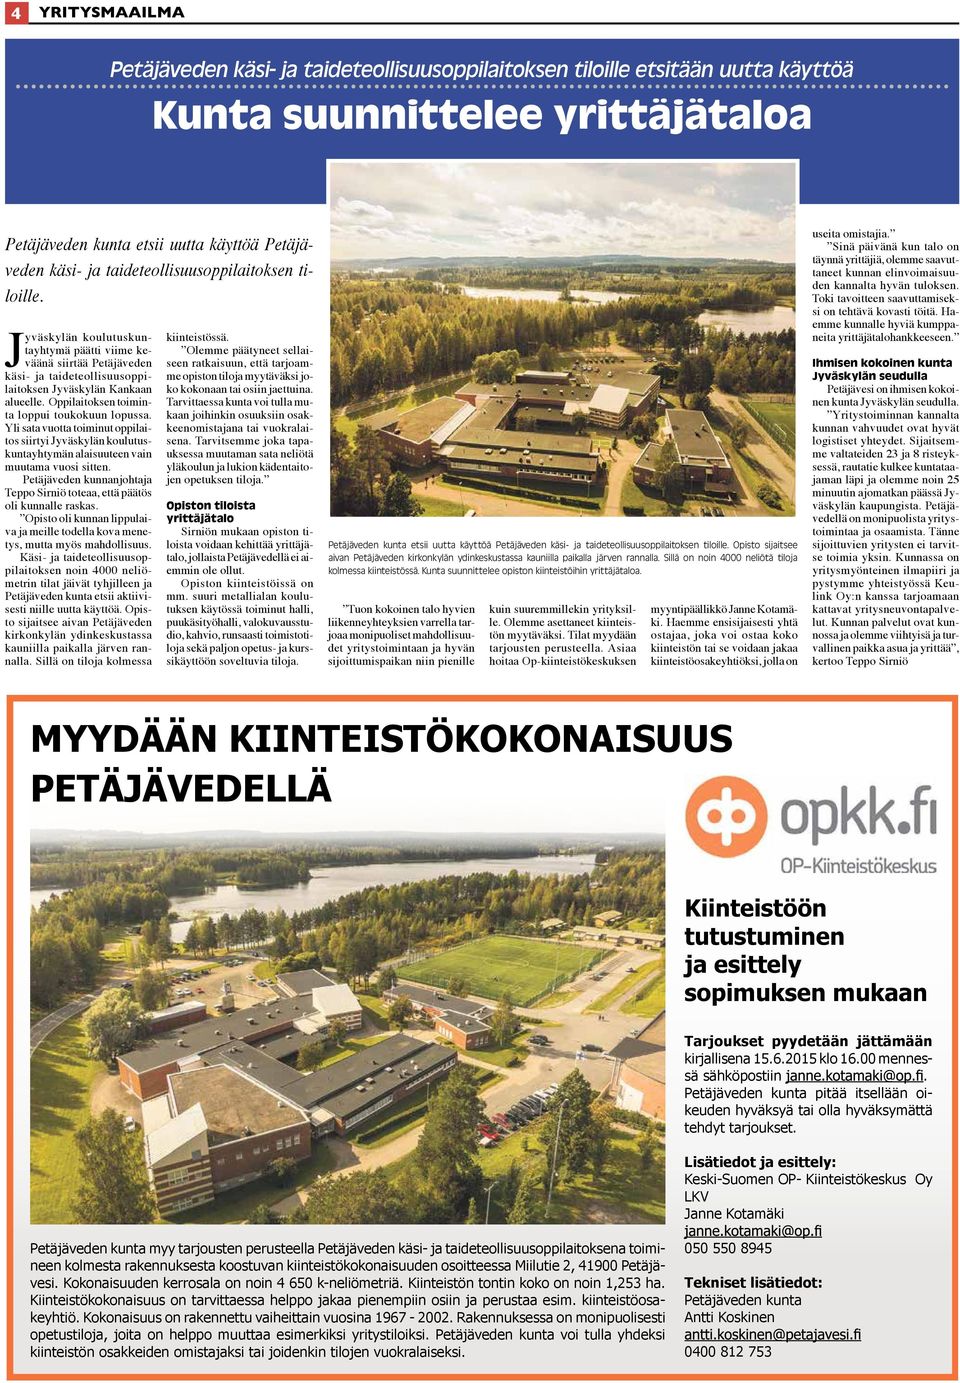 Oppilaitoksen toiminta loppui toukokuun lopussa. Yli sata vuotta toiminut oppilaitos siirtyi Jyväskylän koulutuskuntayhtymän alaisuuteen vain muutama vuosi sitten.